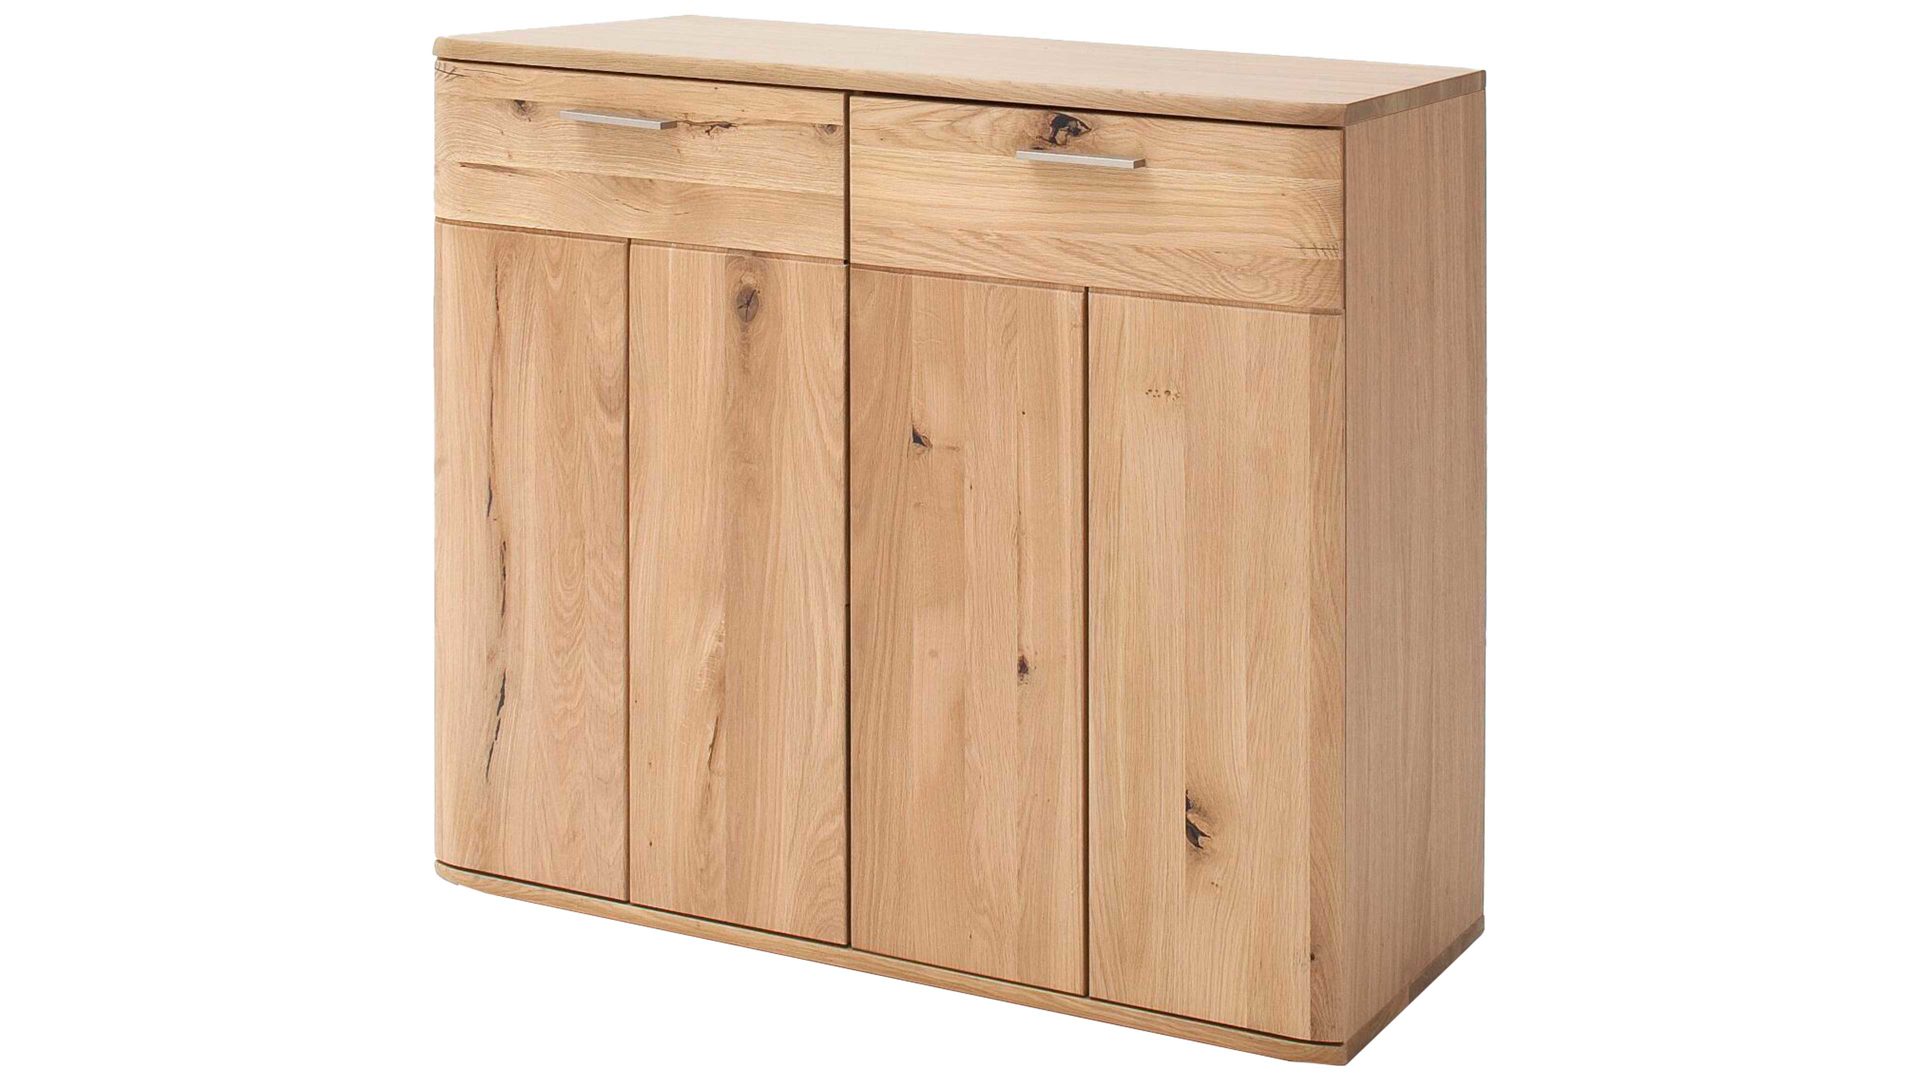 Türenkommode Mca furniture aus Holz in Holzfarben Türenkommode Nilo biancofarbene Balkeneiche – zwei Türen